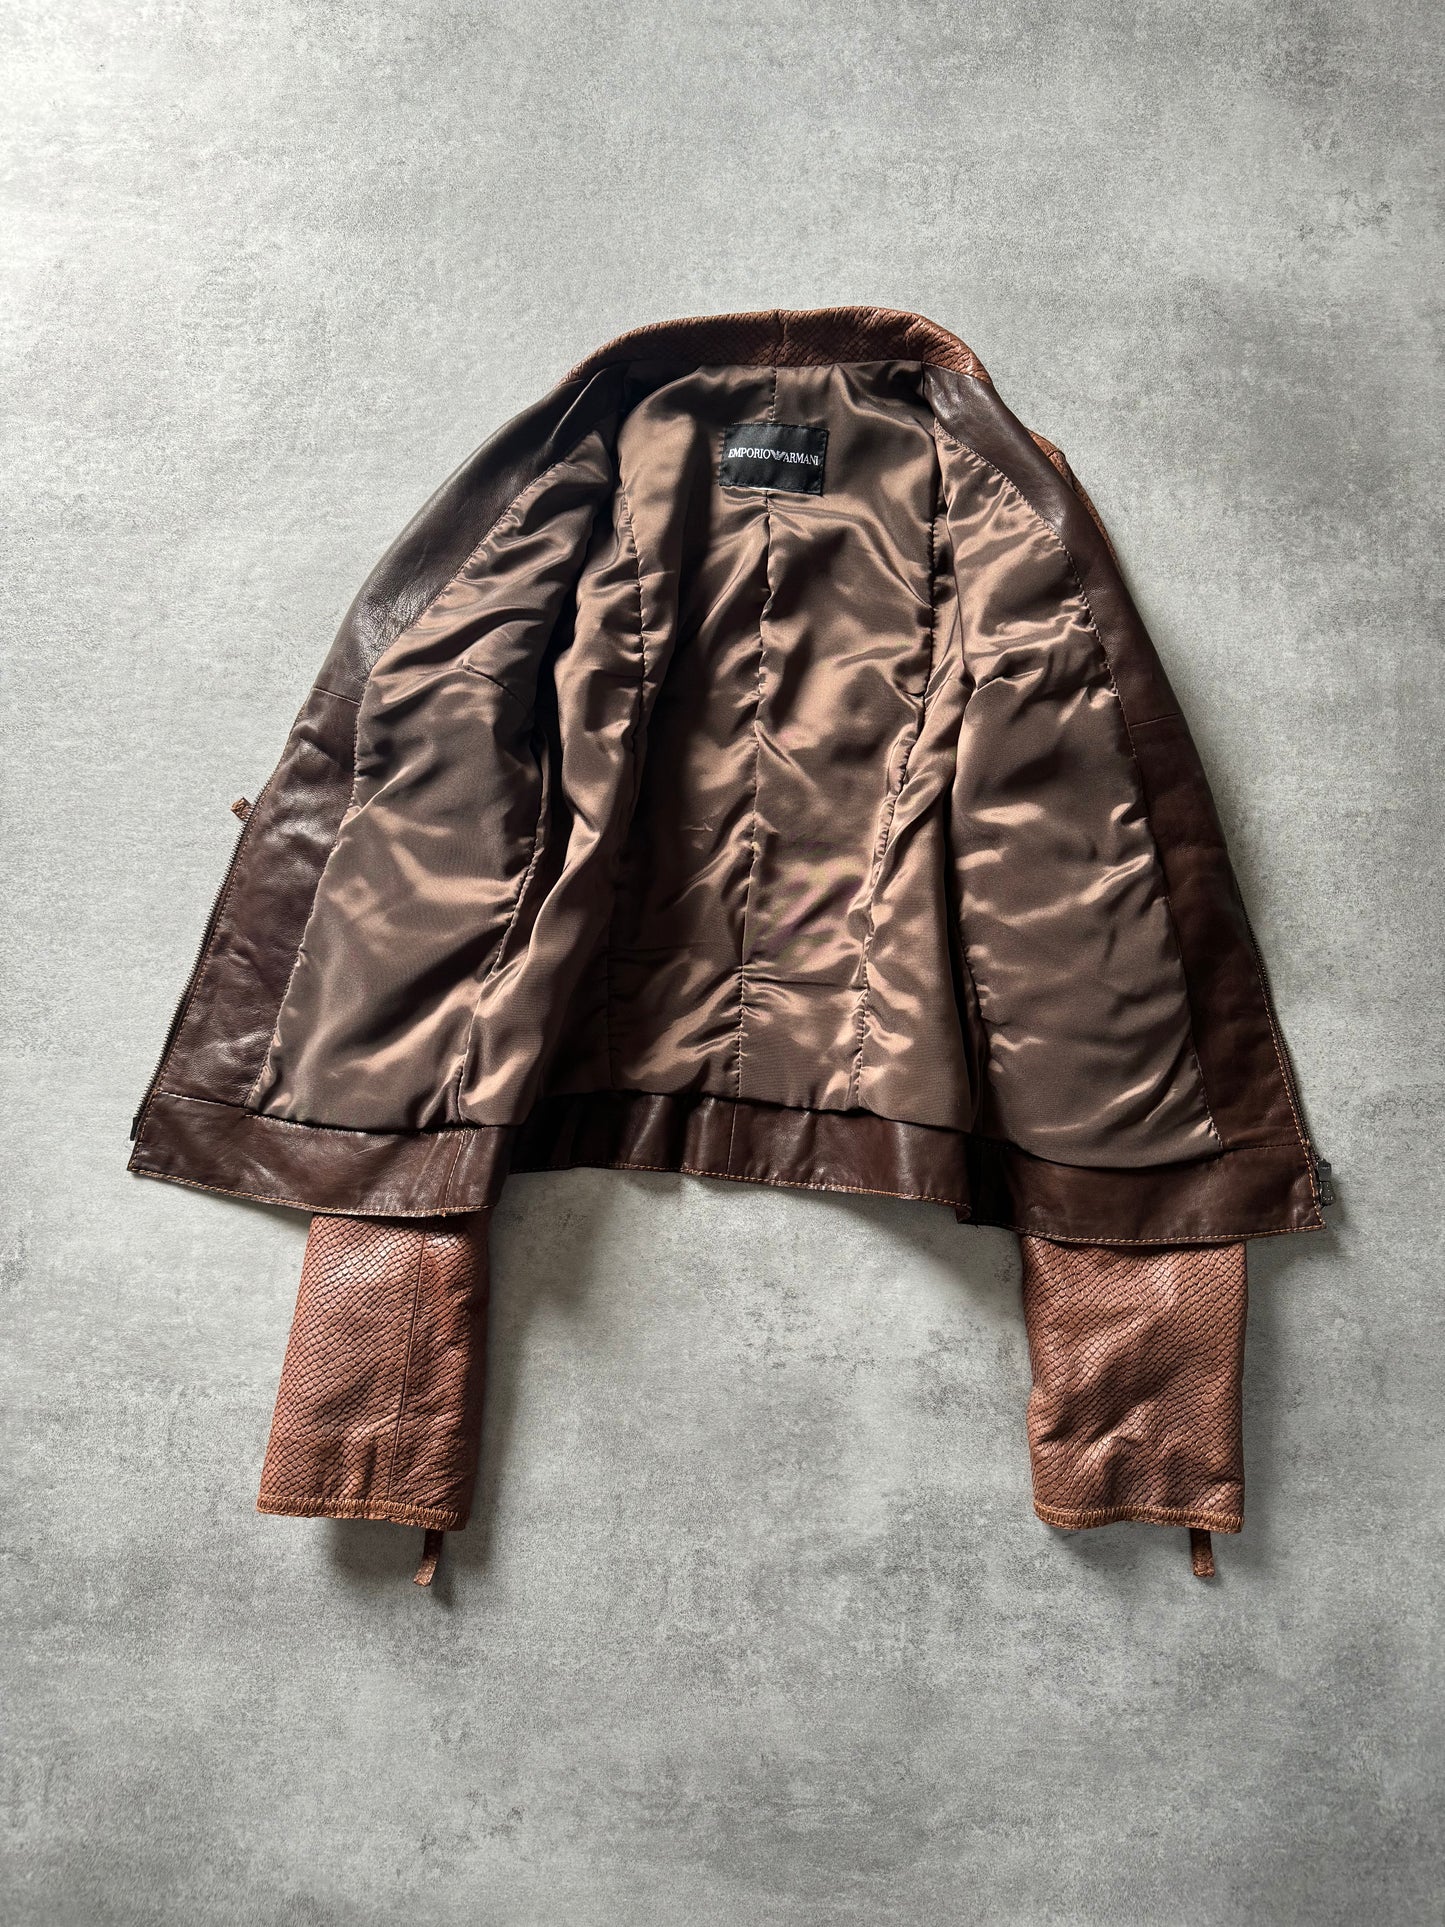 AW2007 Emporio Armani Python Effect Brown Leather Jacket  (XS) - 8